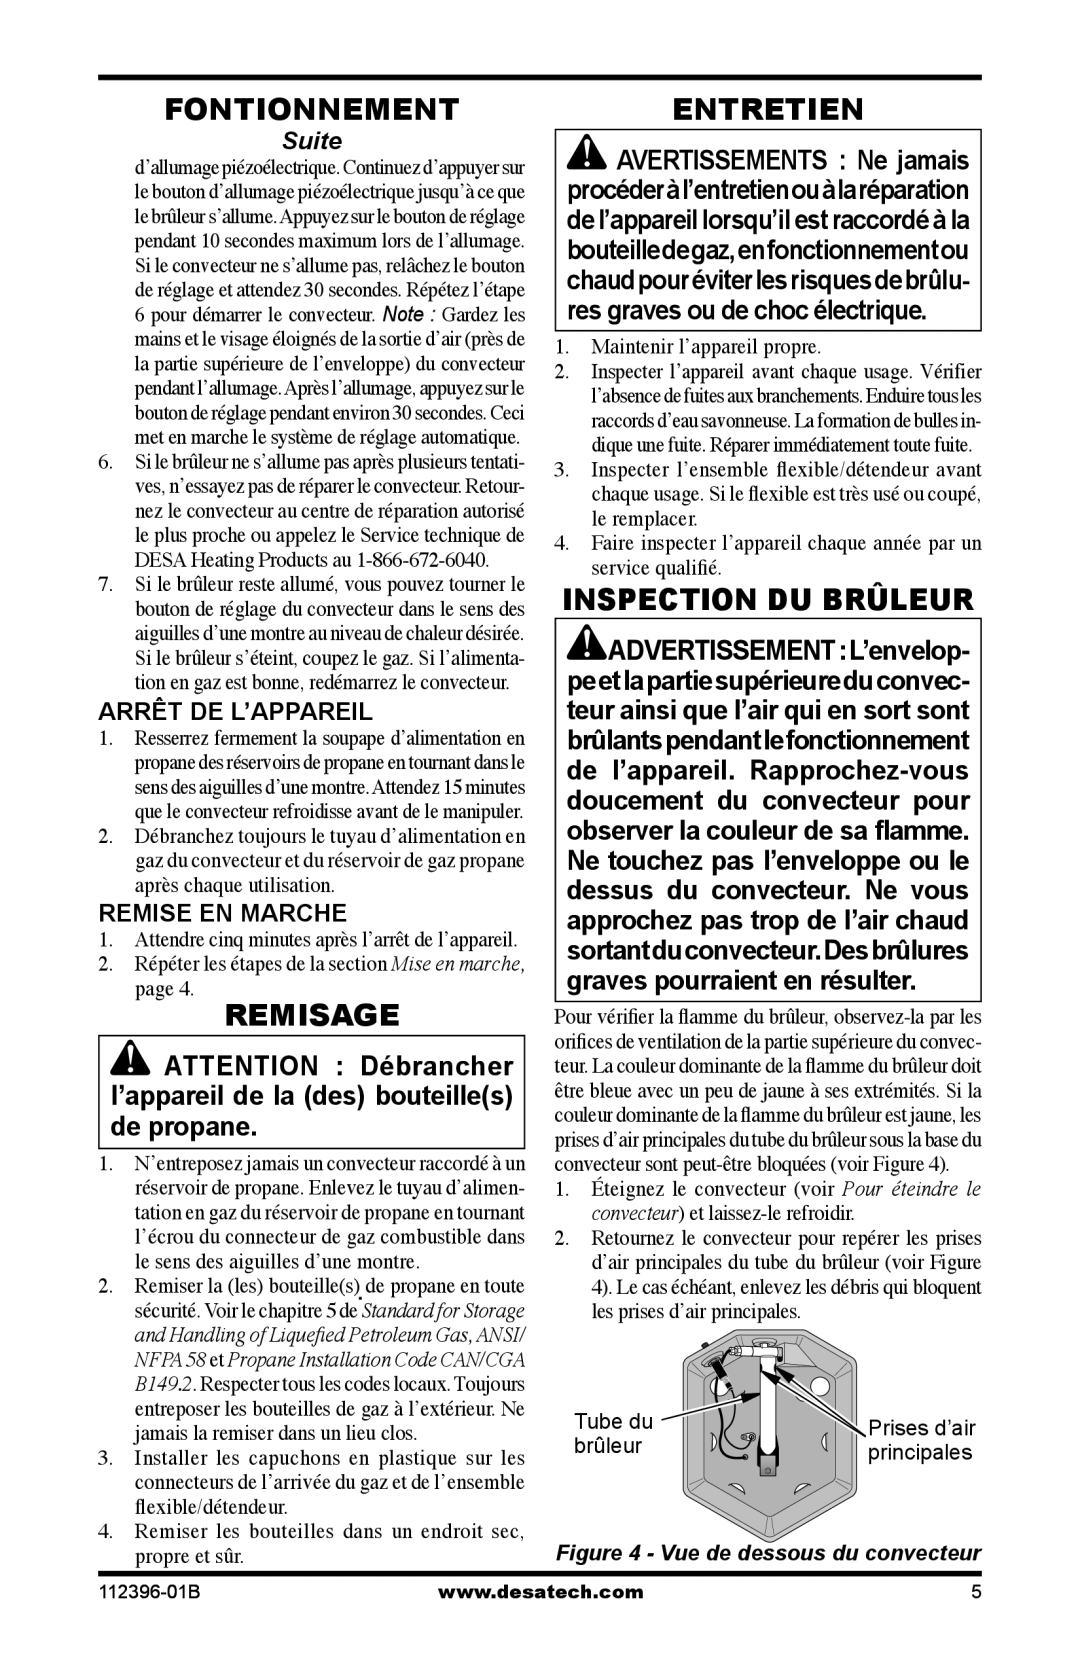 Desa Hr, Btu owner manual Fontionnement, Remisage, Entretien, Inspection Du Brûleur, Arrêt De L’Appareil, Remise En Marche 